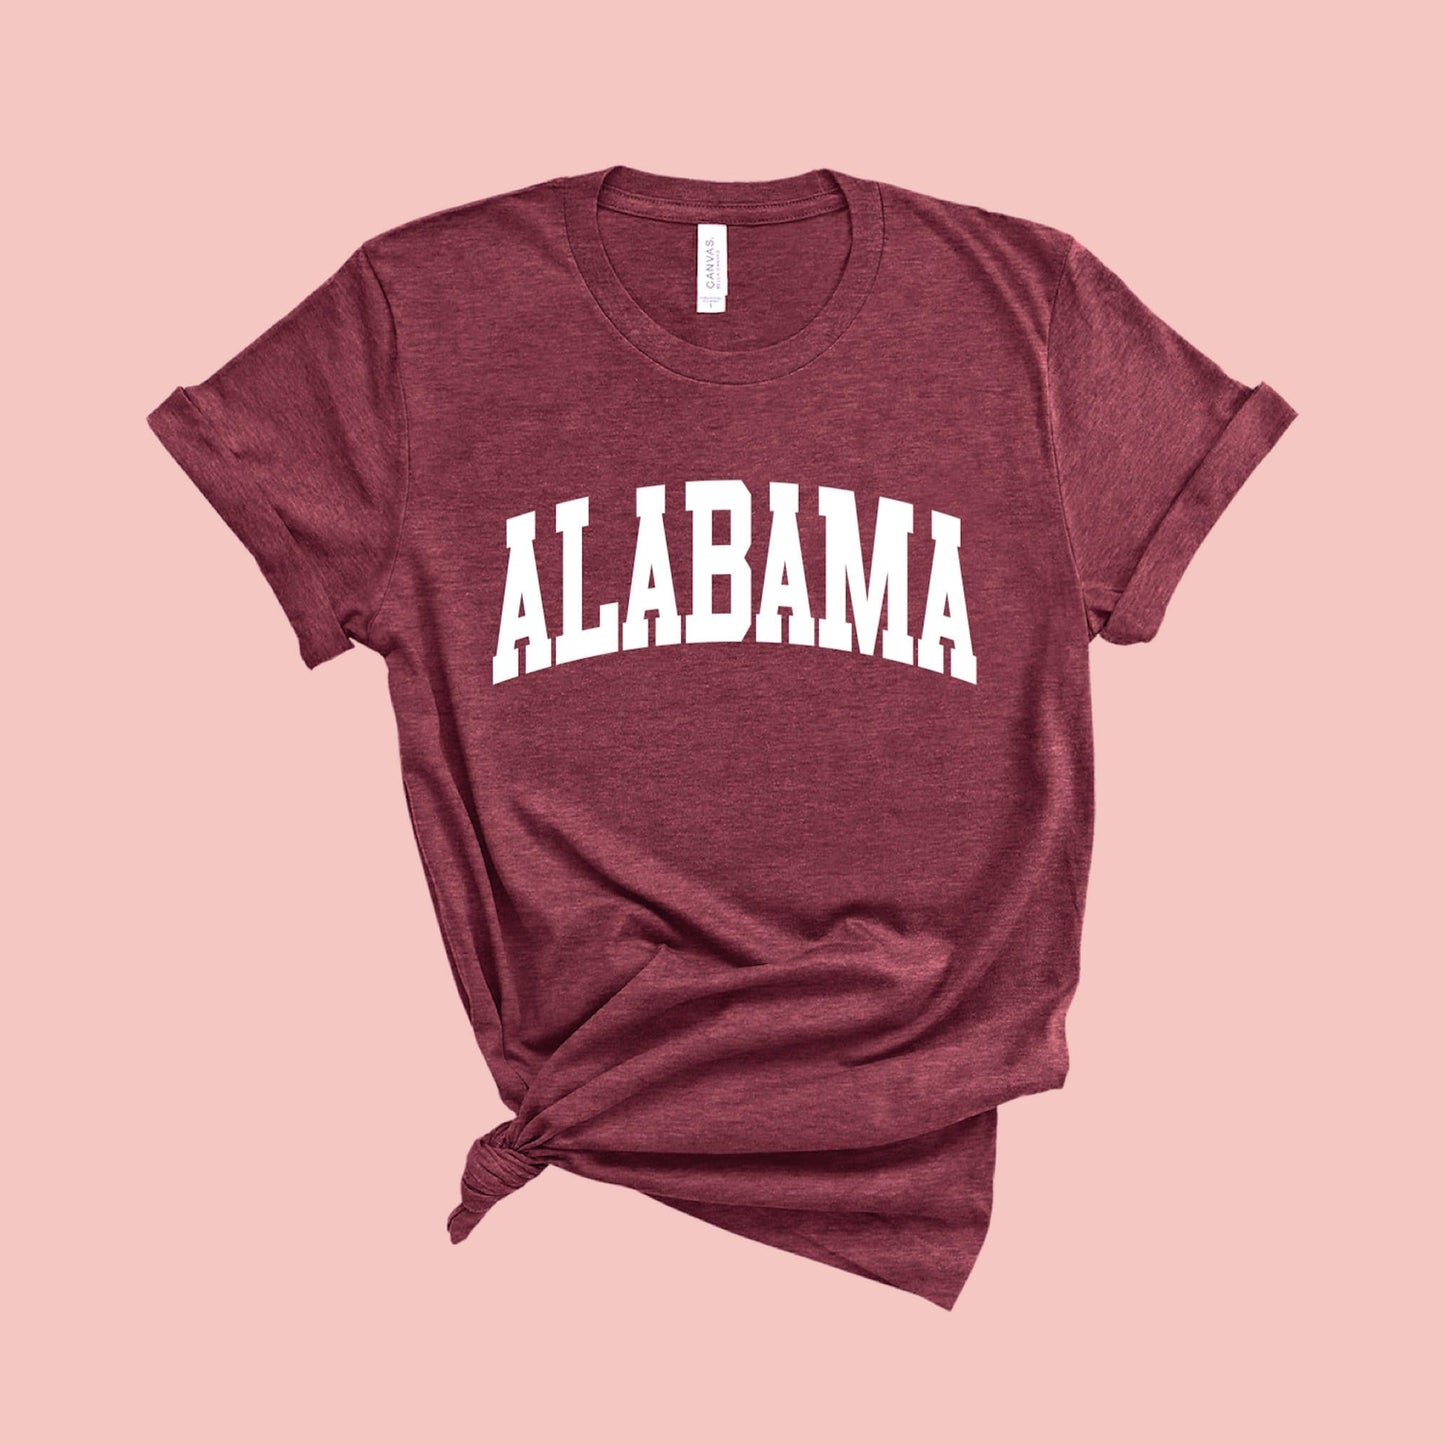 Alabama Shirt University of Alabama Shirt Alabama University Shirt Alabama State Shirt